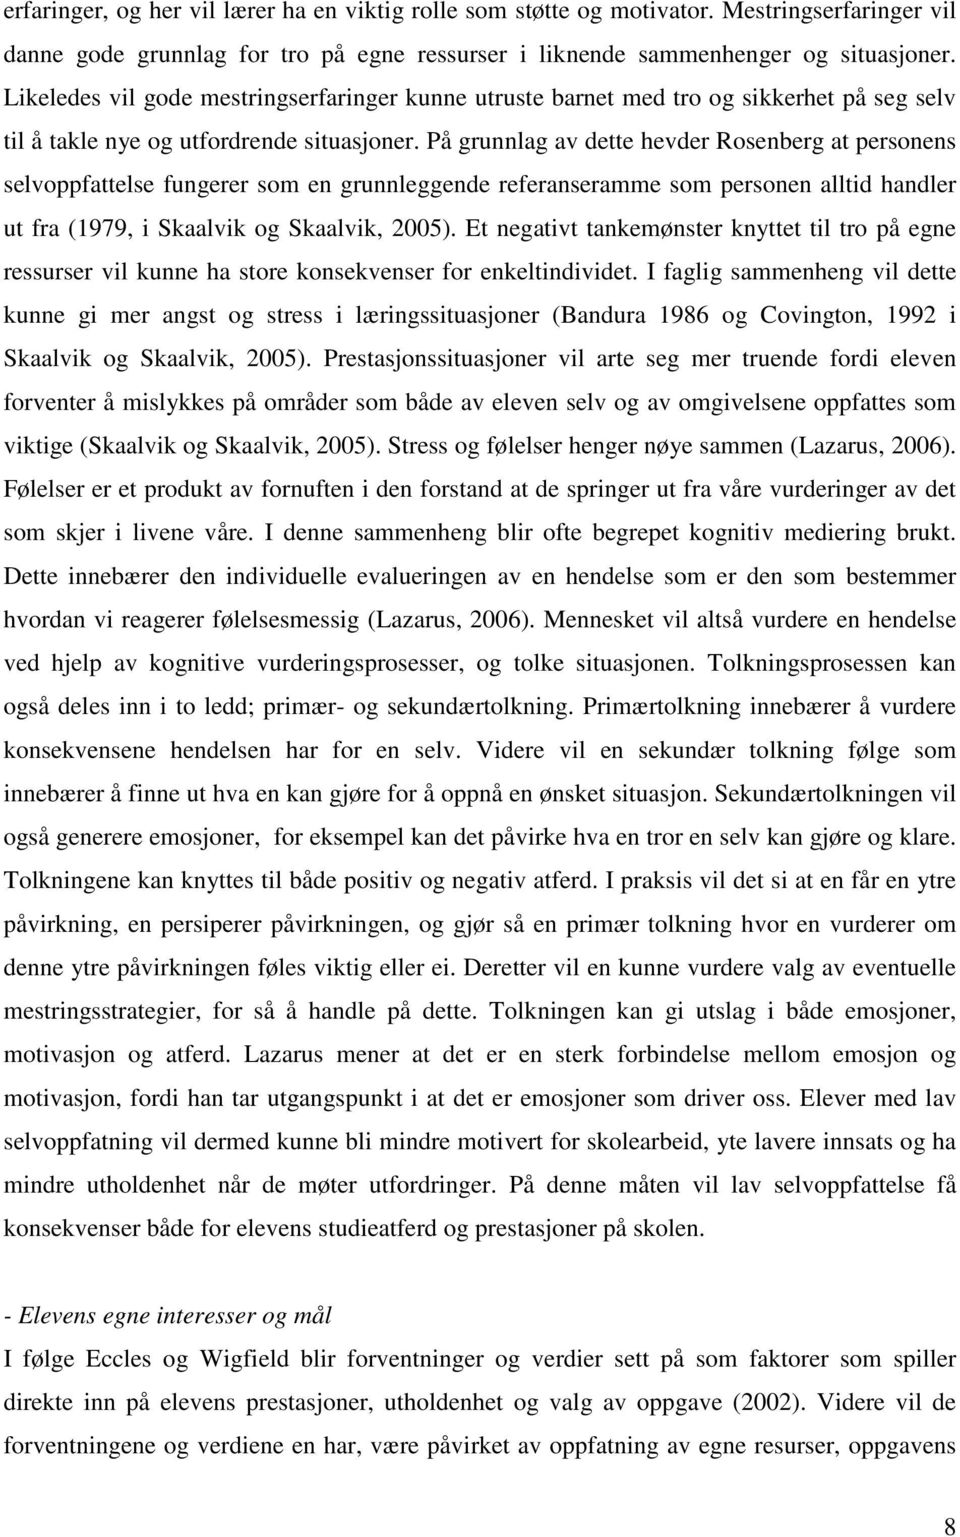 På grunnlag av dette hevder Rosenberg at personens selvoppfattelse fungerer som en grunnleggende referanseramme som personen alltid handler ut fra (1979, i Skaalvik og Skaalvik, 2005).